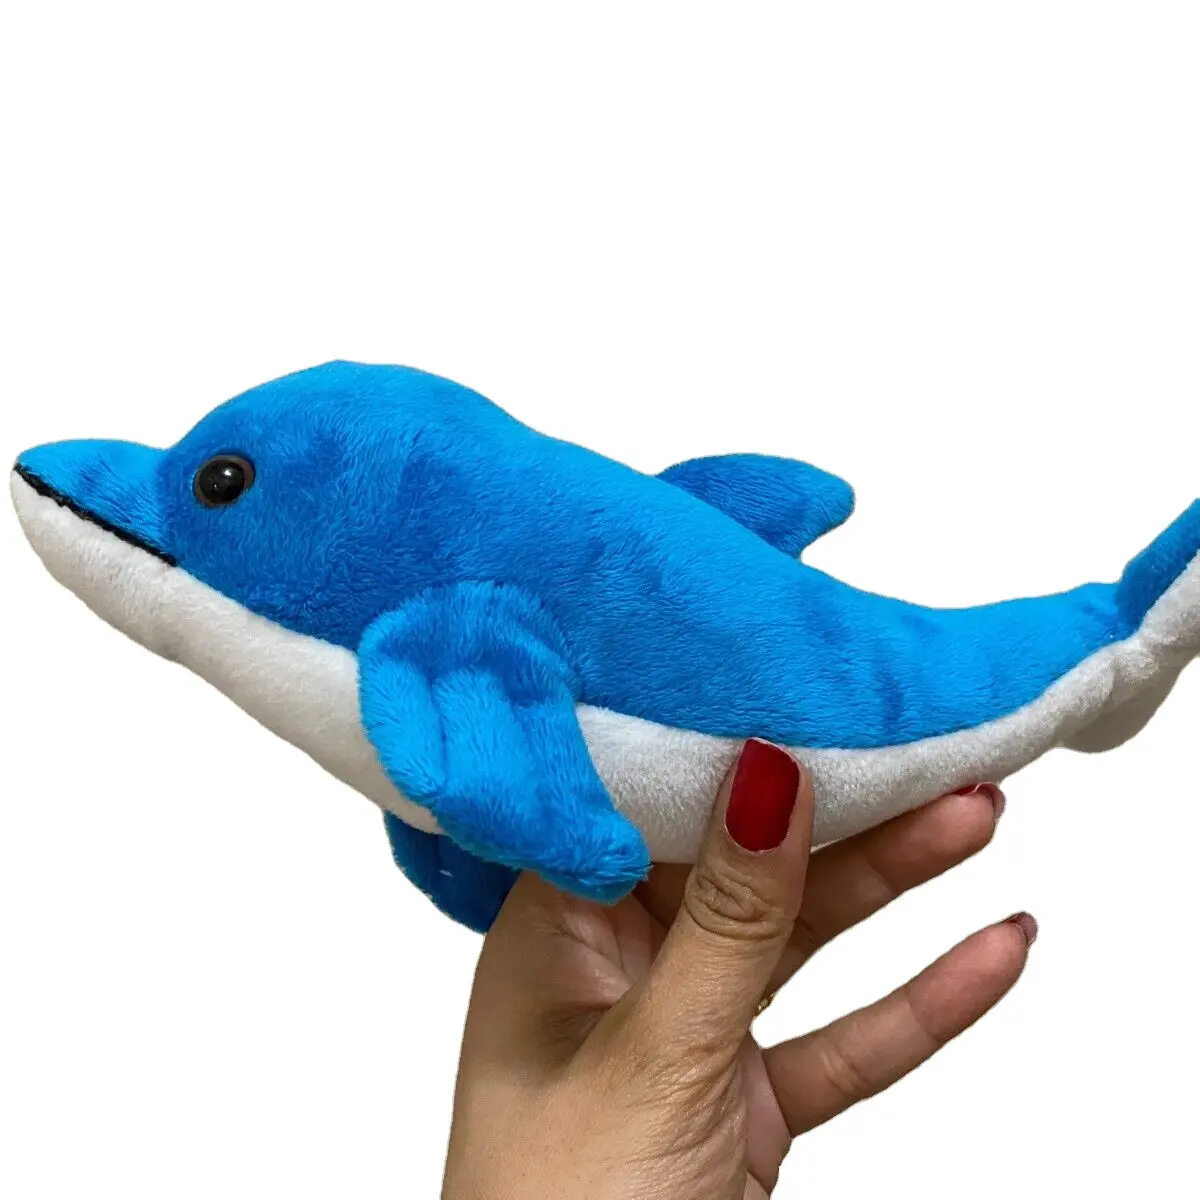 Новые Пользовательские синий кит Мягкие плюшевые игрушки ниже 1 доллар продукты